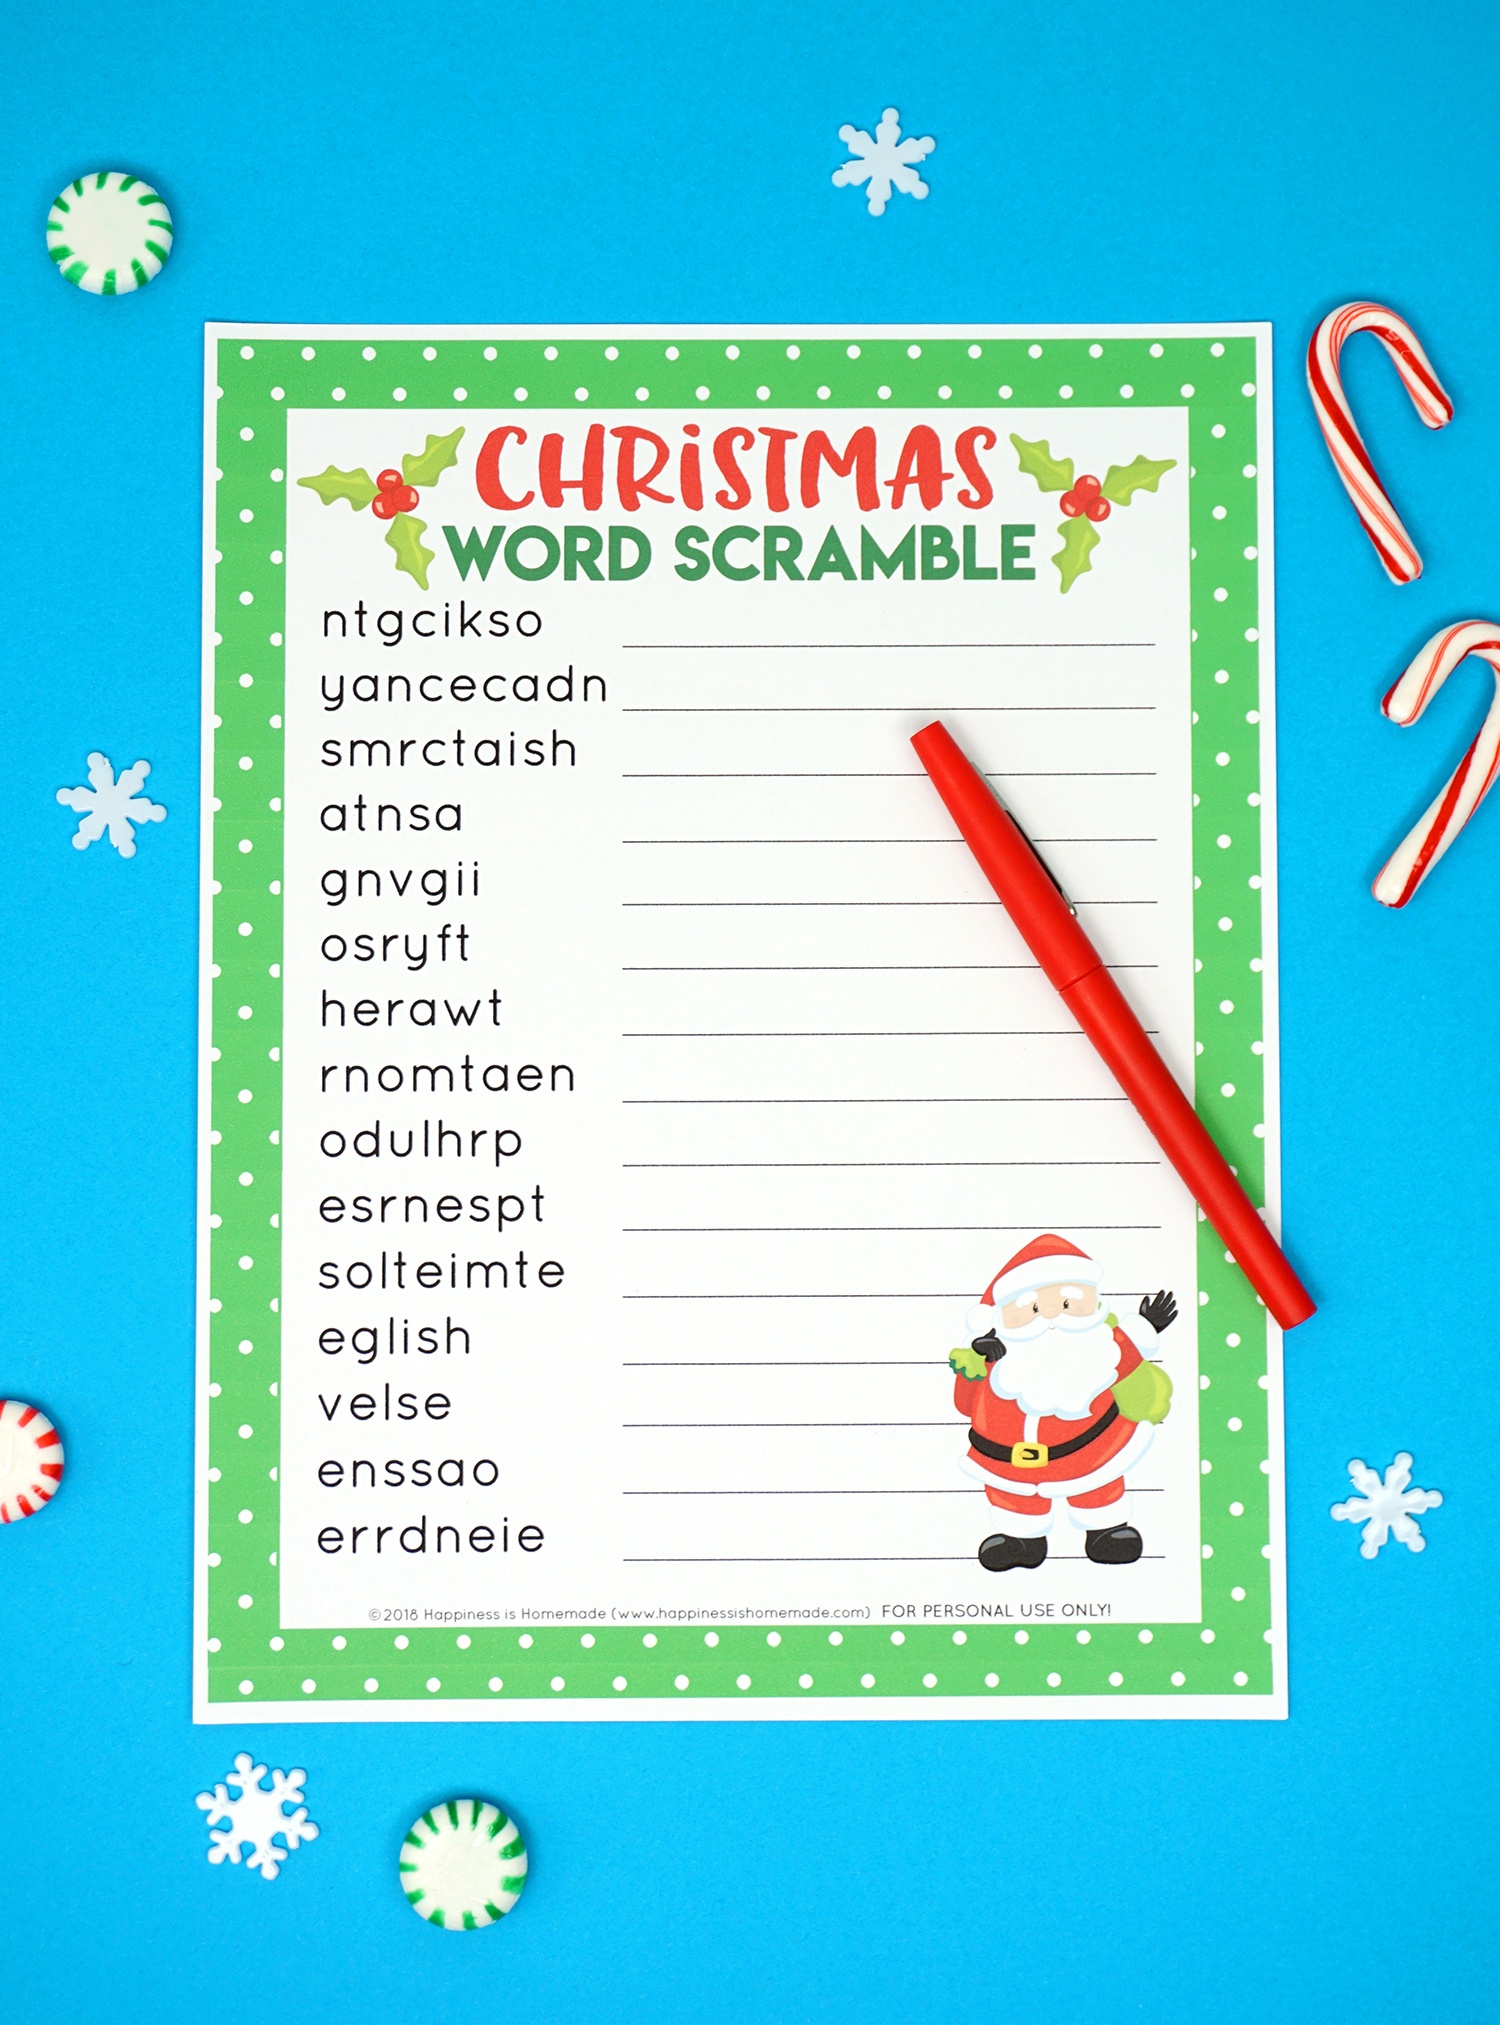 Christmas Word Scramble Printable - Happiness Is Homemade - Free Printable Jumble Word Games